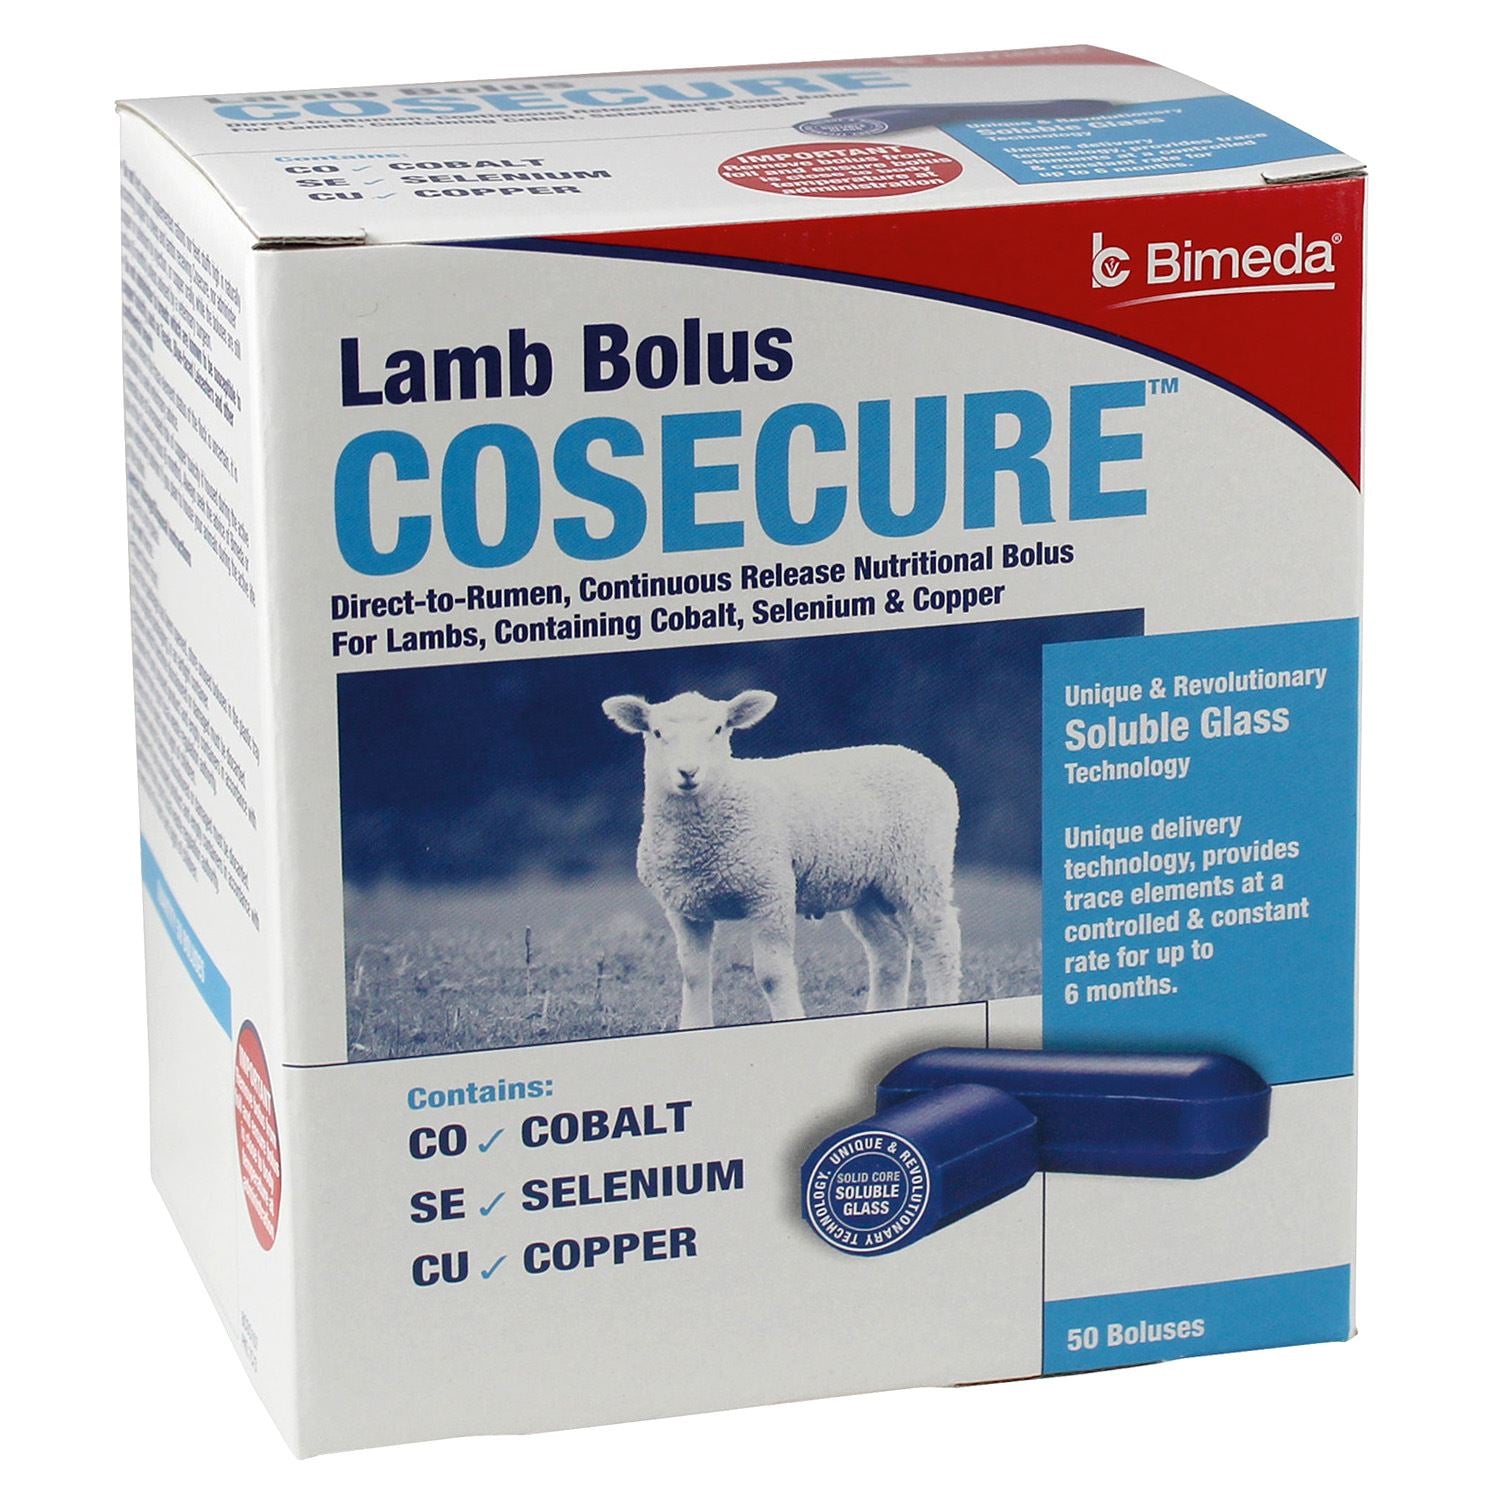 Bimeda Cosecure Lamb Bolus - Just Horse Riders